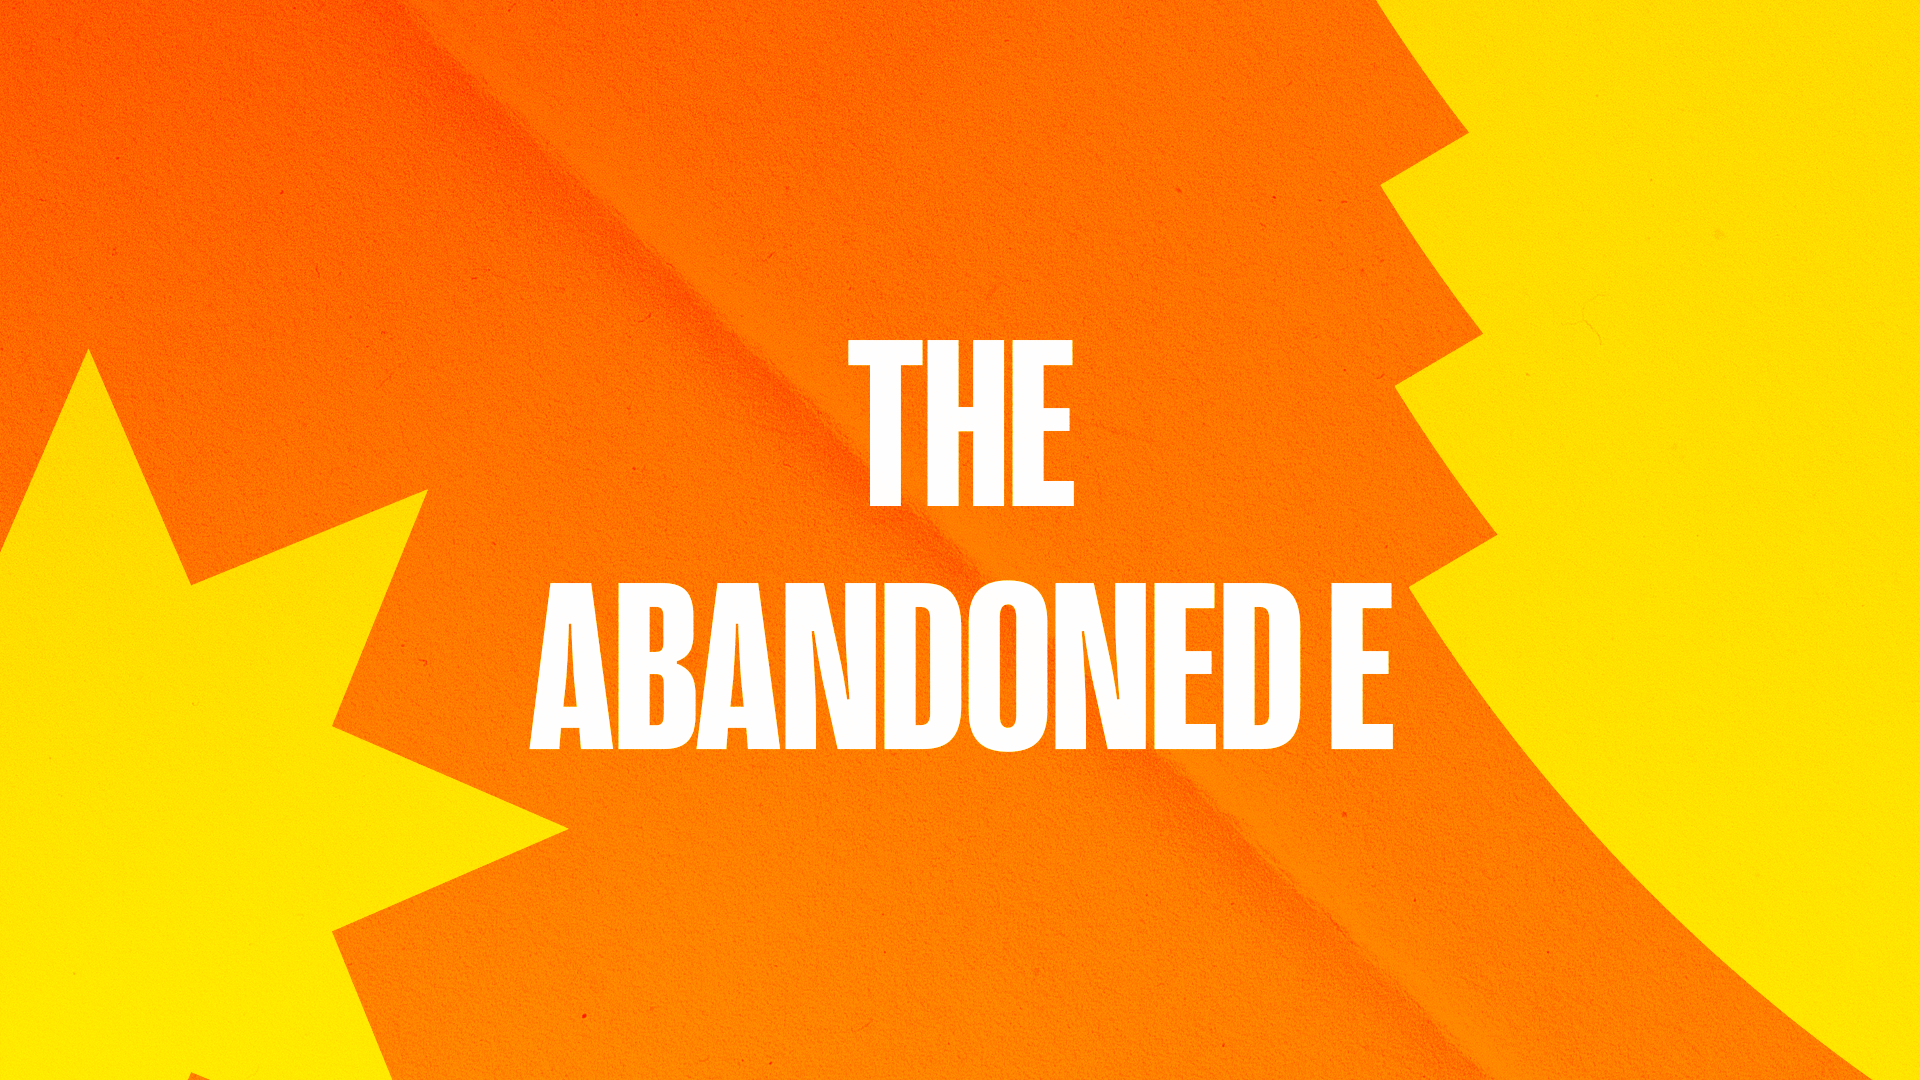 The abandoned E